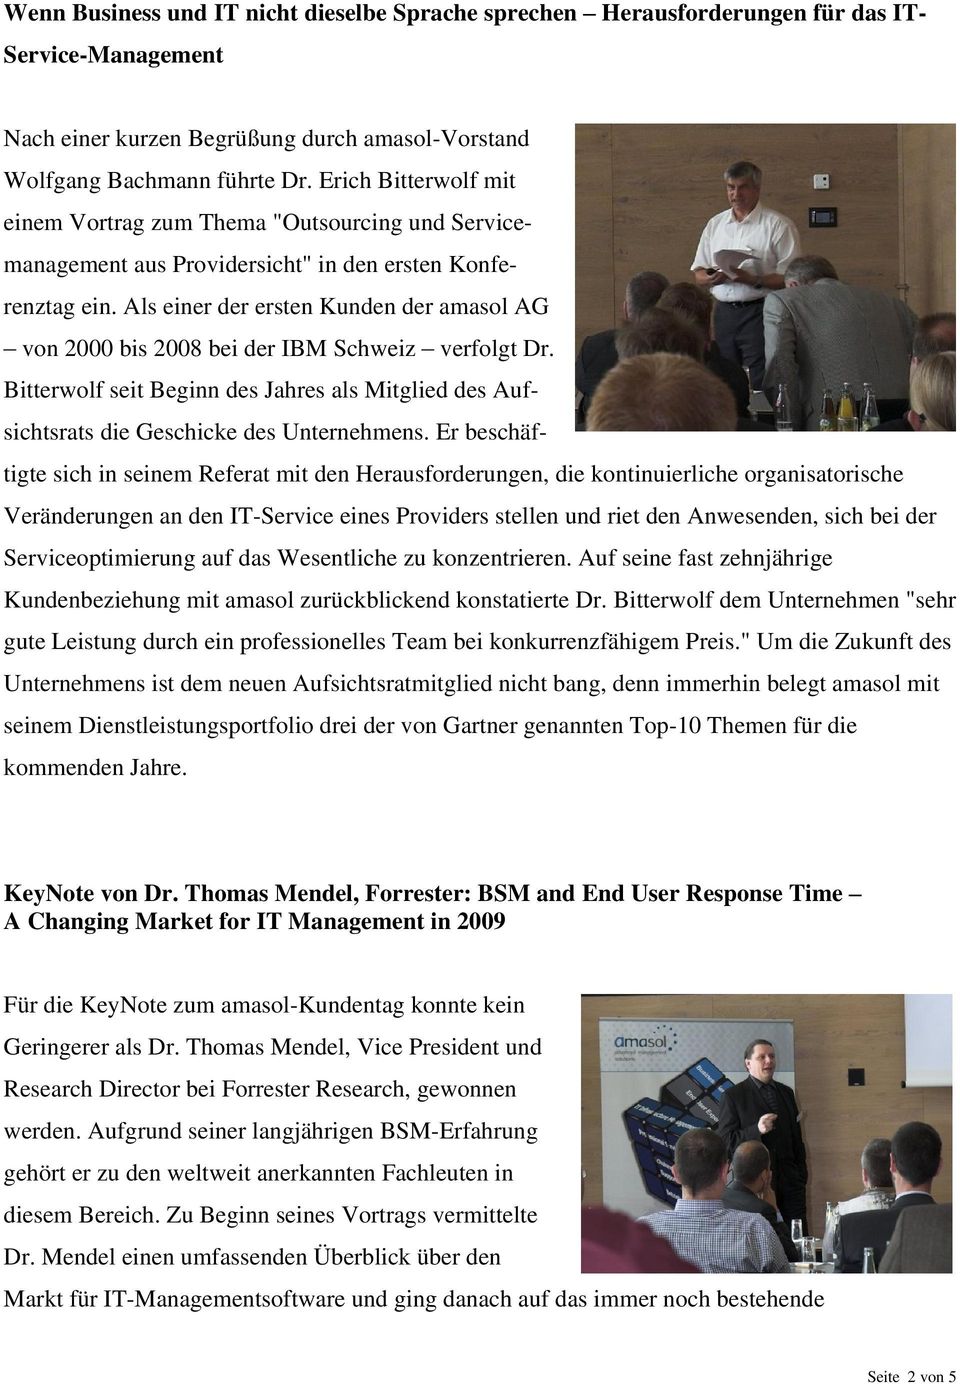 Als einer der ersten Kunden der amasol AG von 2000 bis 2008 bei der IBM Schweiz verfolgt Dr. Bitterwolf seit Beginn des Jahres als Mitglied des Aufsichtsrats die Geschicke des Unternehmens.